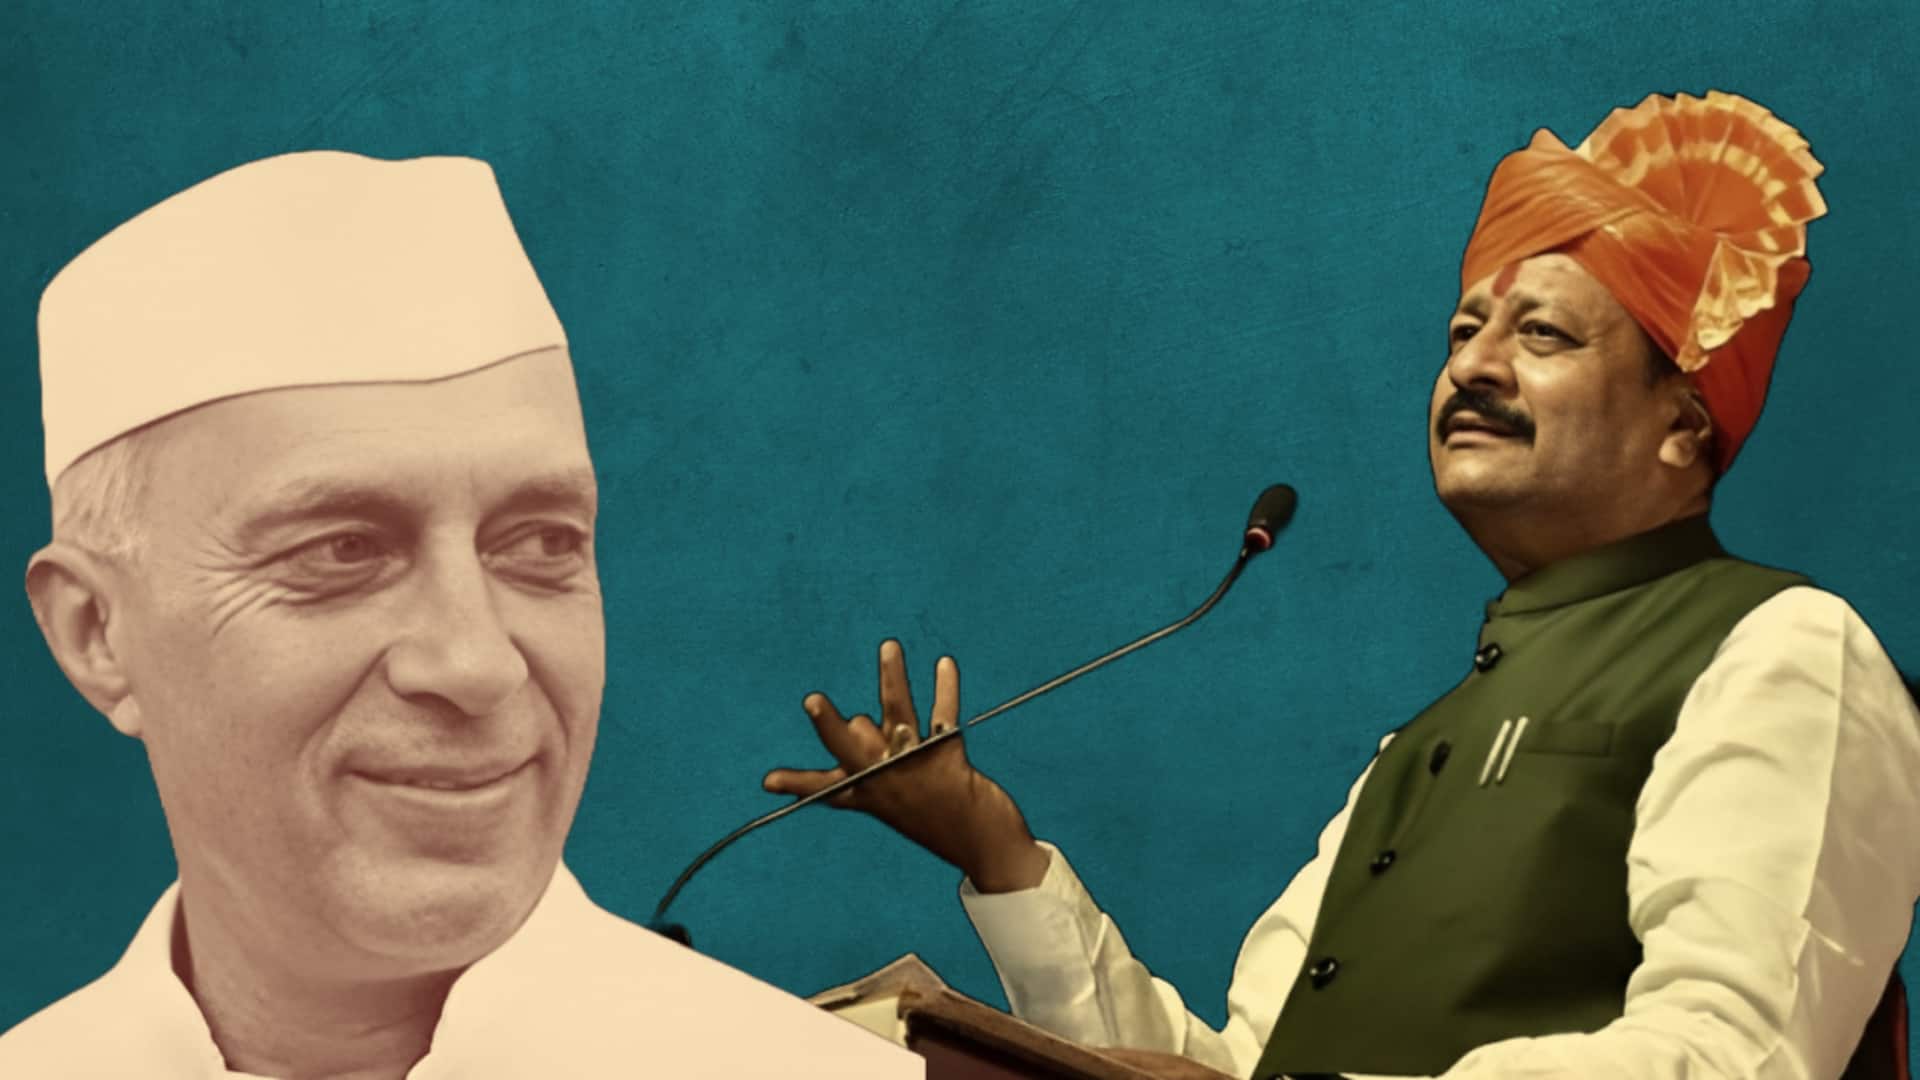 कर्नाटक: भाजपा विधायक बसनगौड़ा पाटिल का विवादित बयान, कहा- नेहरू नहीं, बोस थे पहले प्रधानमंत्री 